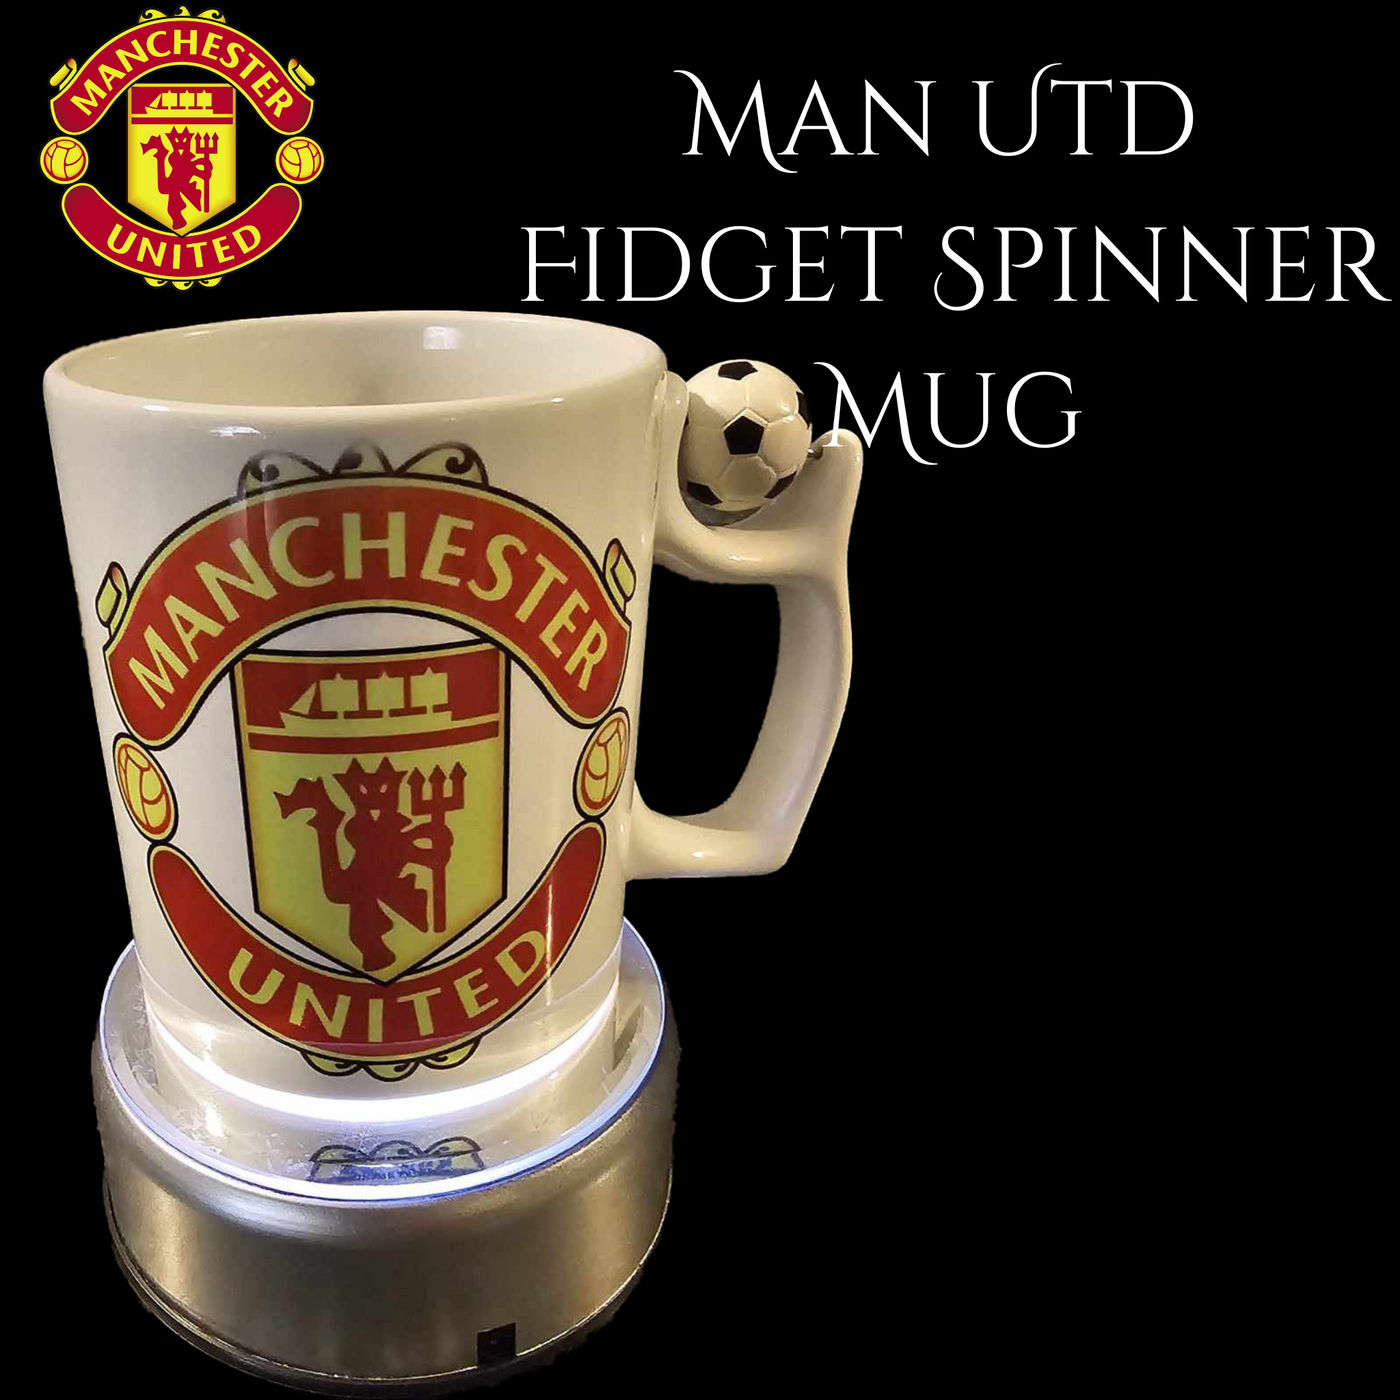 Man Utd Fidget Spinner Mug